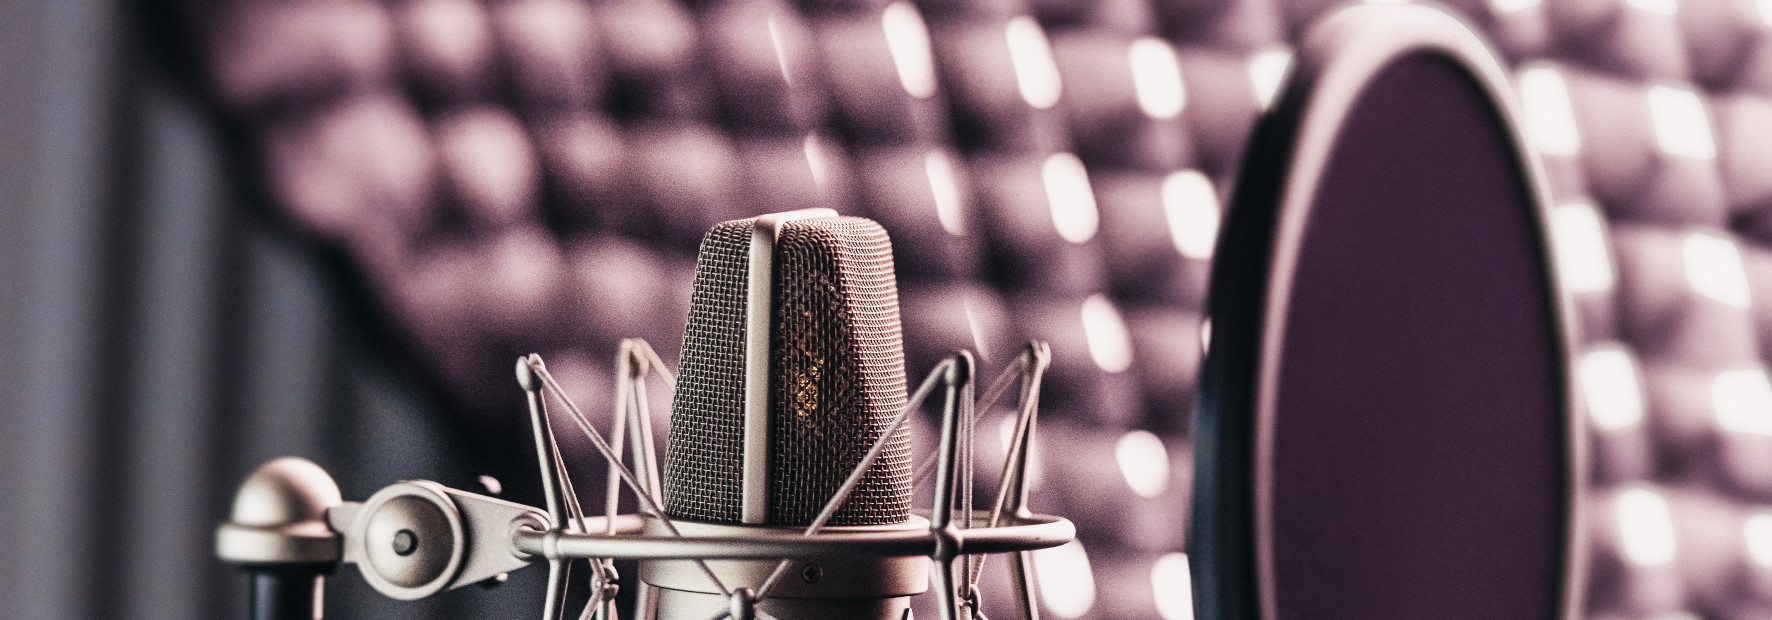 Audiobranding: Der perfekte Markensound durch Algorithmen